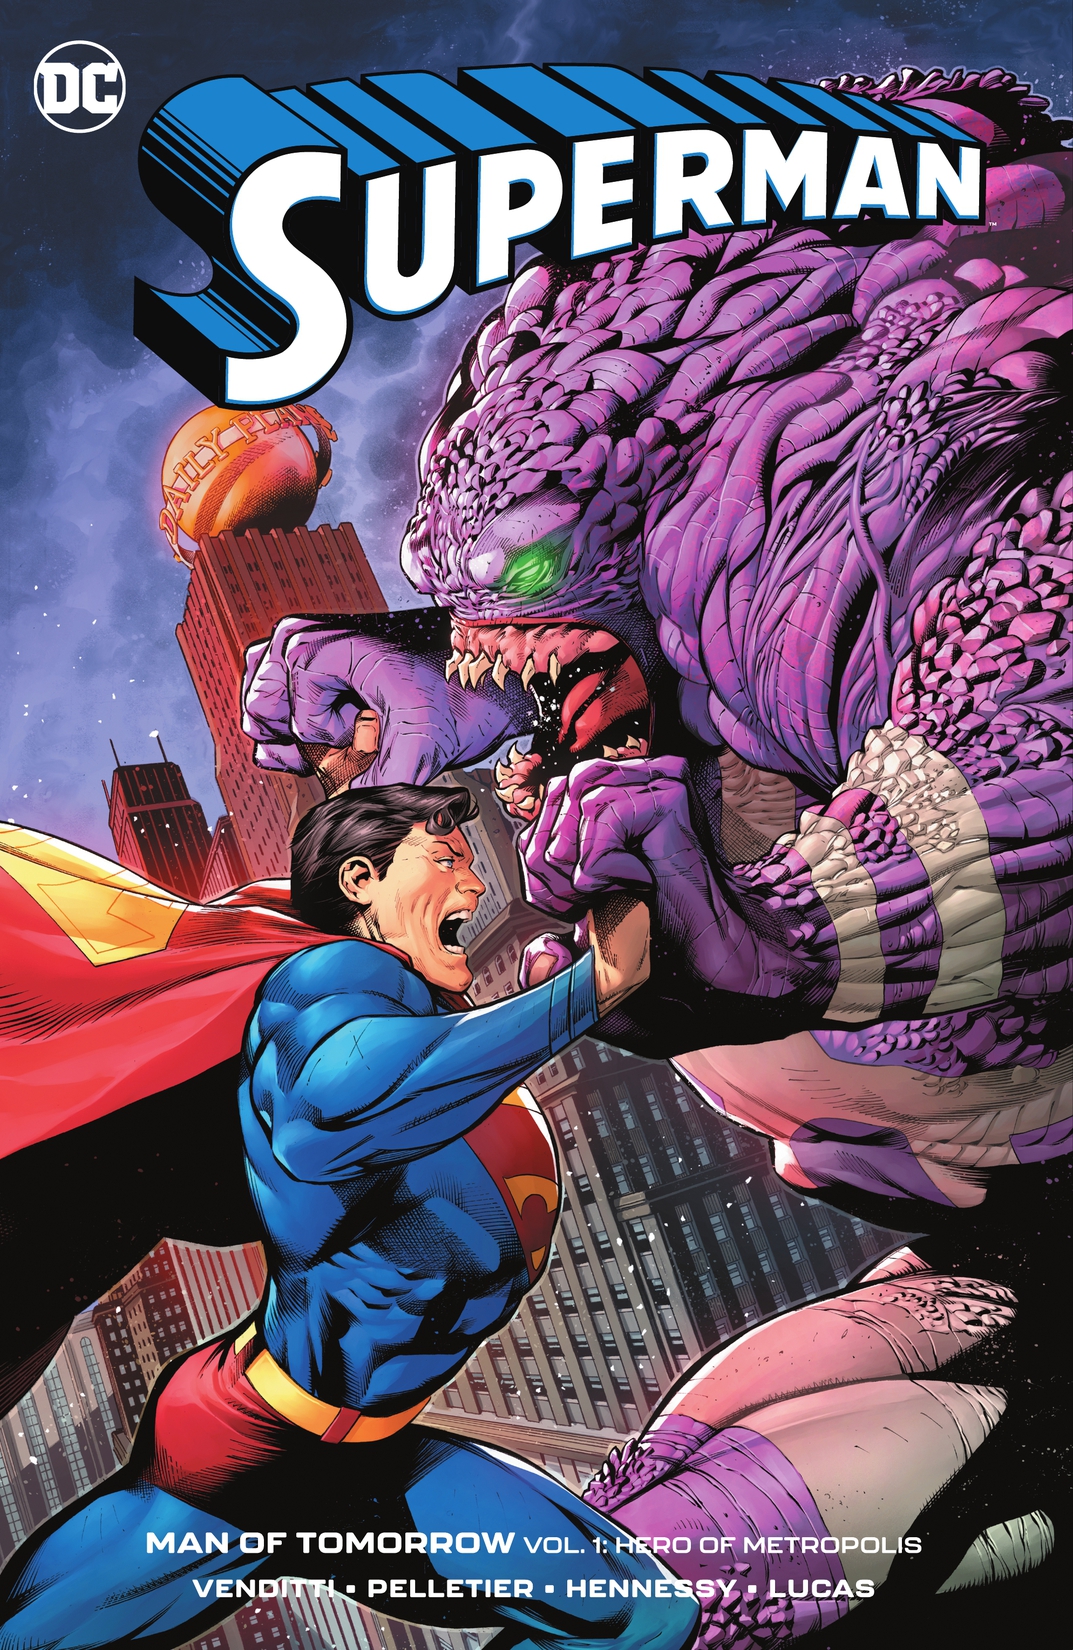 Superman: Man of Tomorrow Vol. 1: Hero of Metropolis preview images